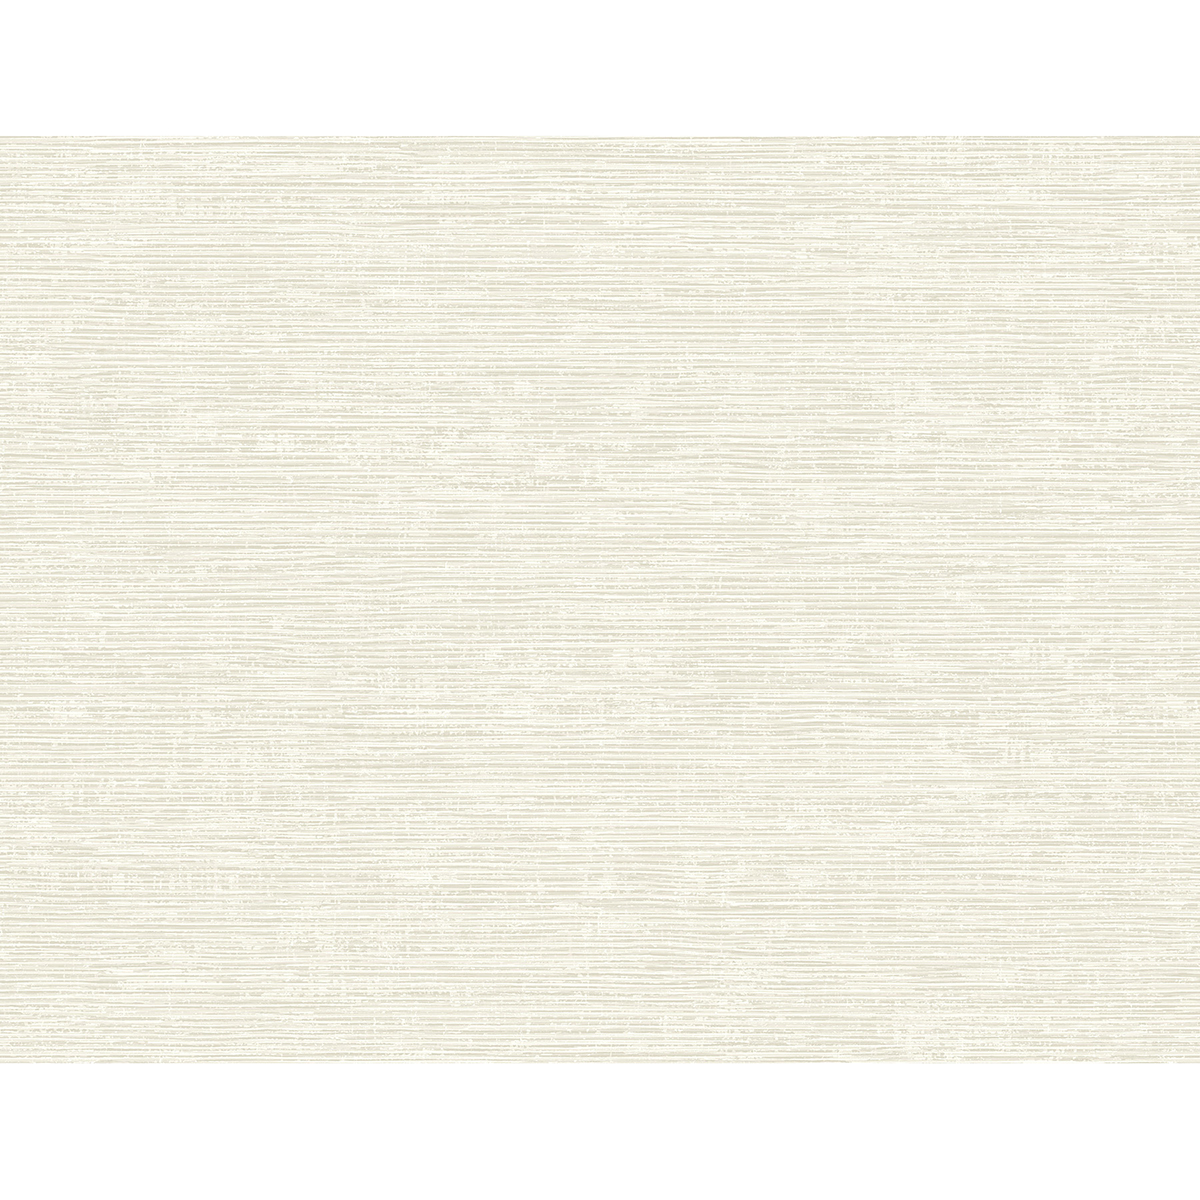 2927-81705 - Tiverton Bone Faux Grasscloth Wallpaper - by A-Street Prints